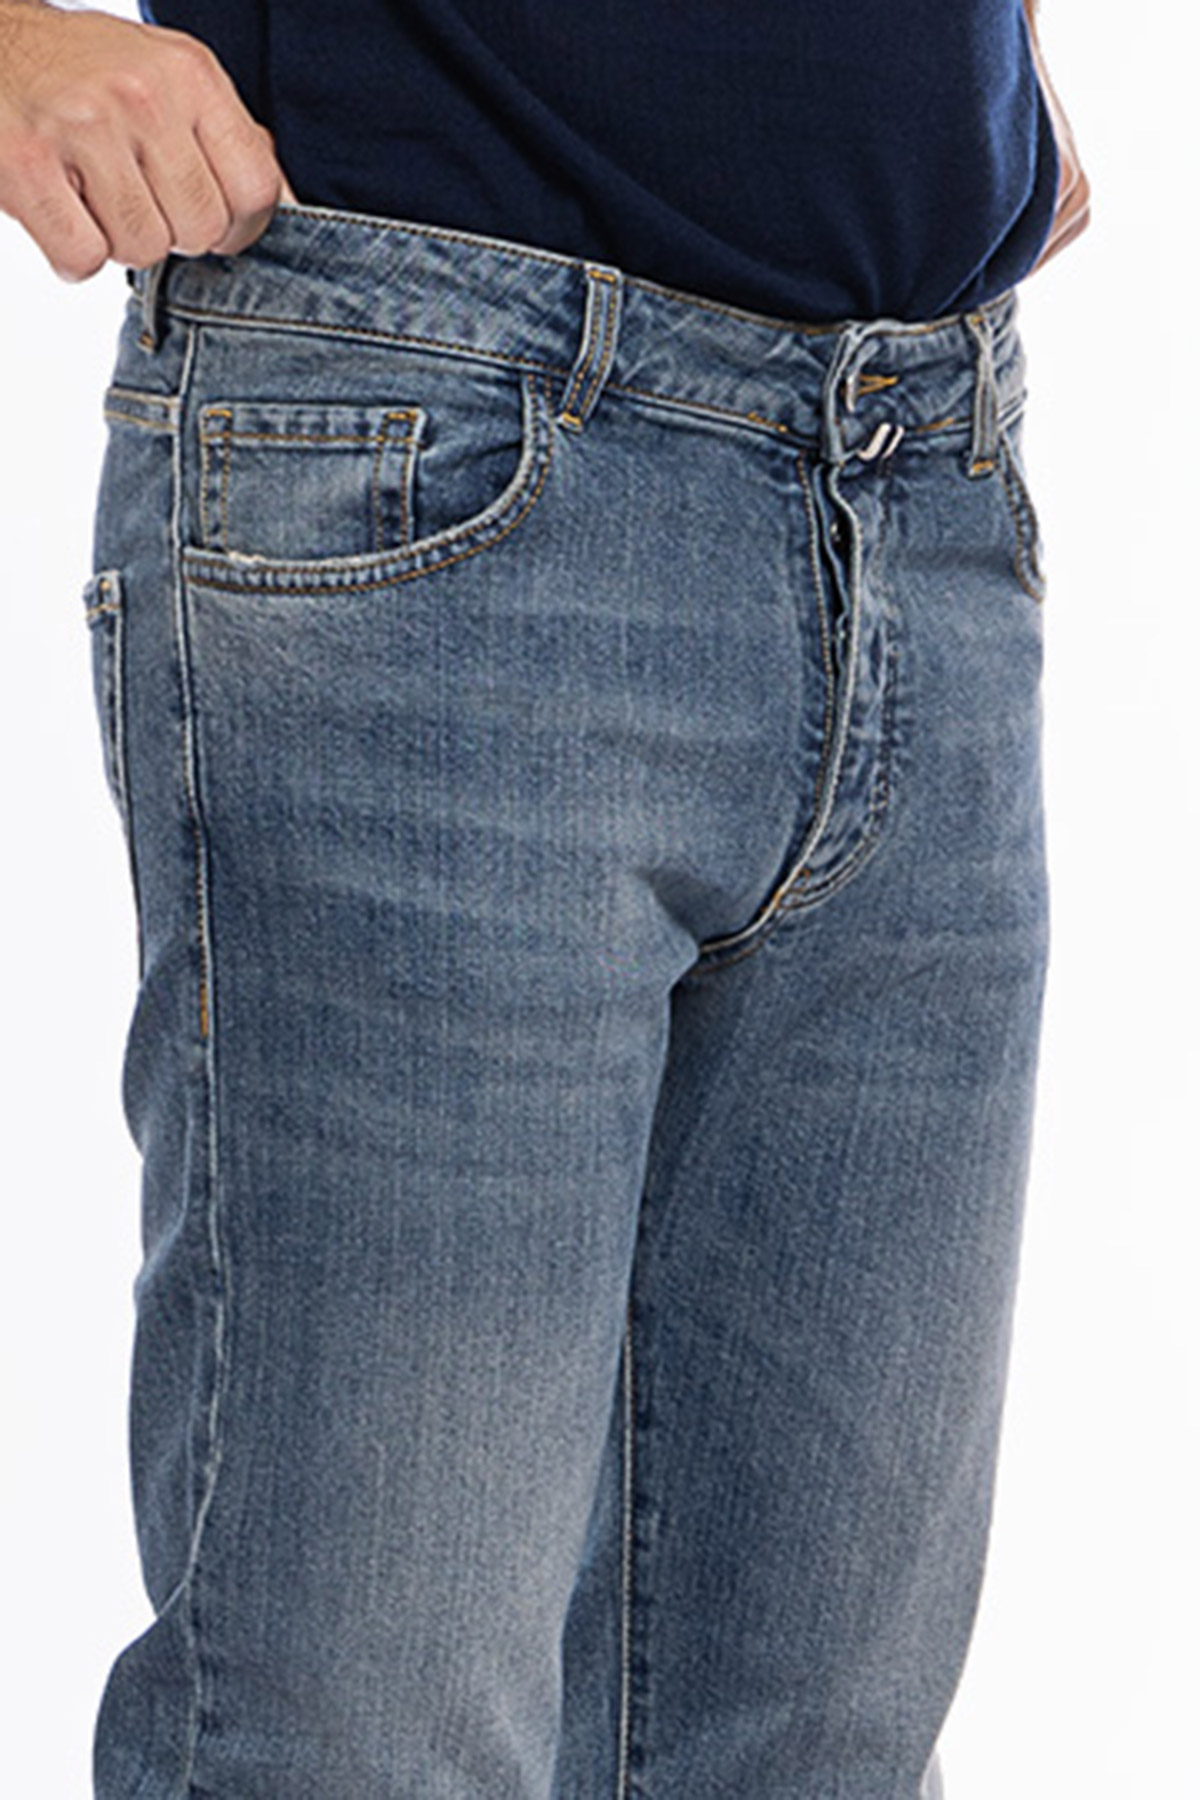 Jeans da uomo con sfumature beige modello 5 tasche slim fit made in italy